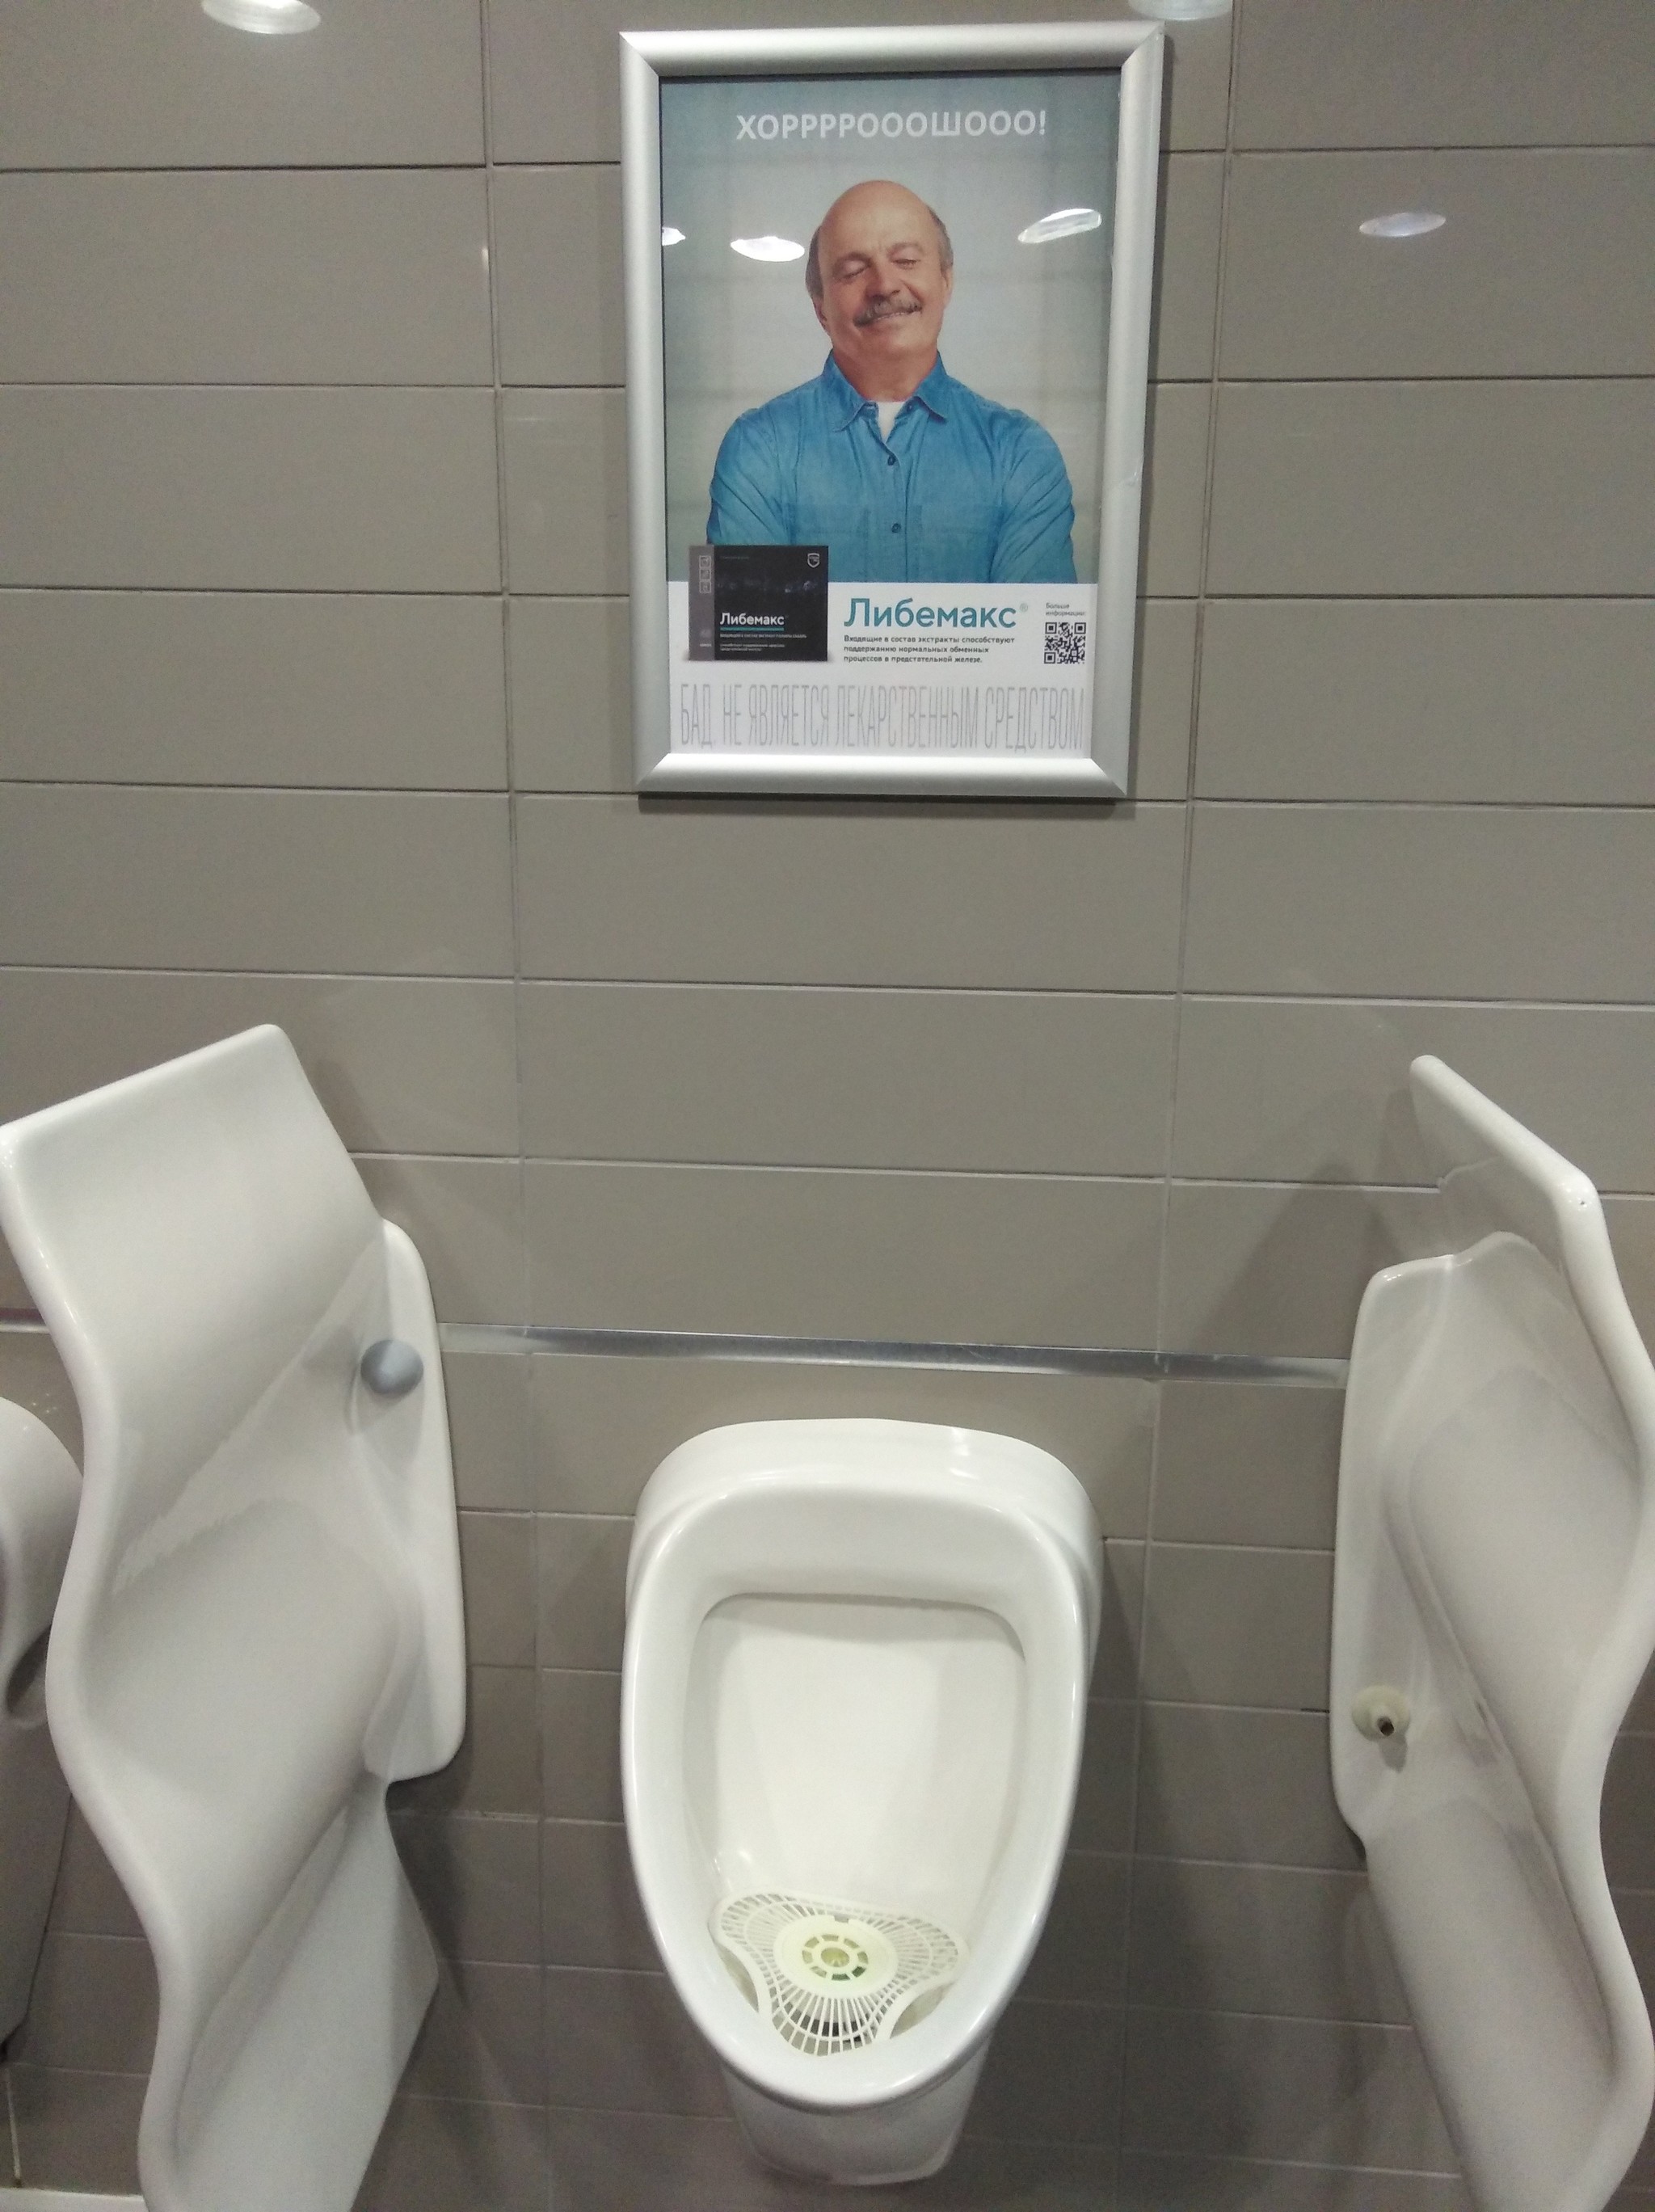 Задолбала реклама на телефоне. Реклама в аэропорту. Прикольные объявления в аэропортах. Плакат рекламный у аэропорта Сочи про Путина.